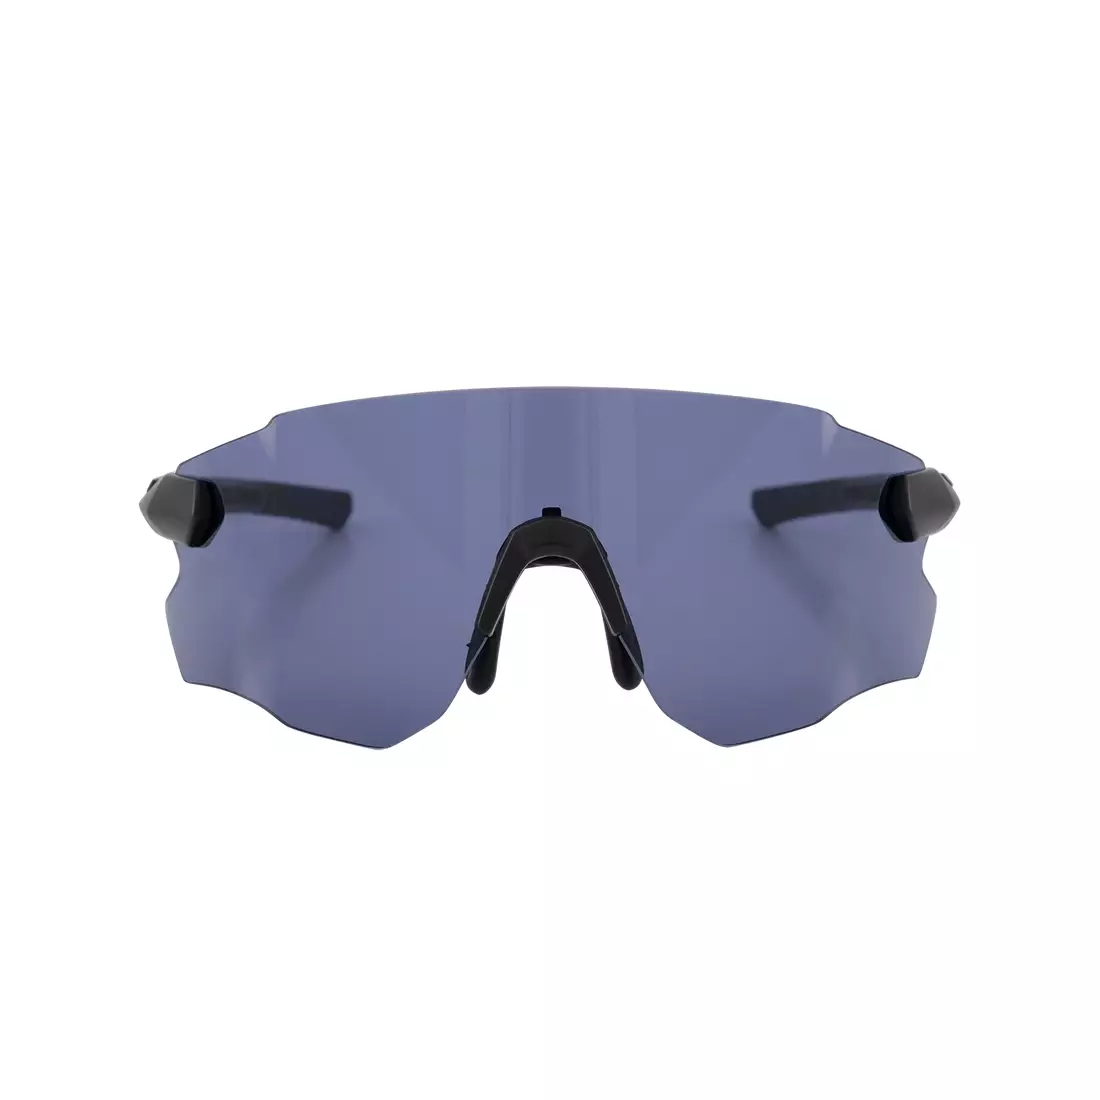 ROGELLI športové okuliare s vymeniteľnými sklami VISTA čierna